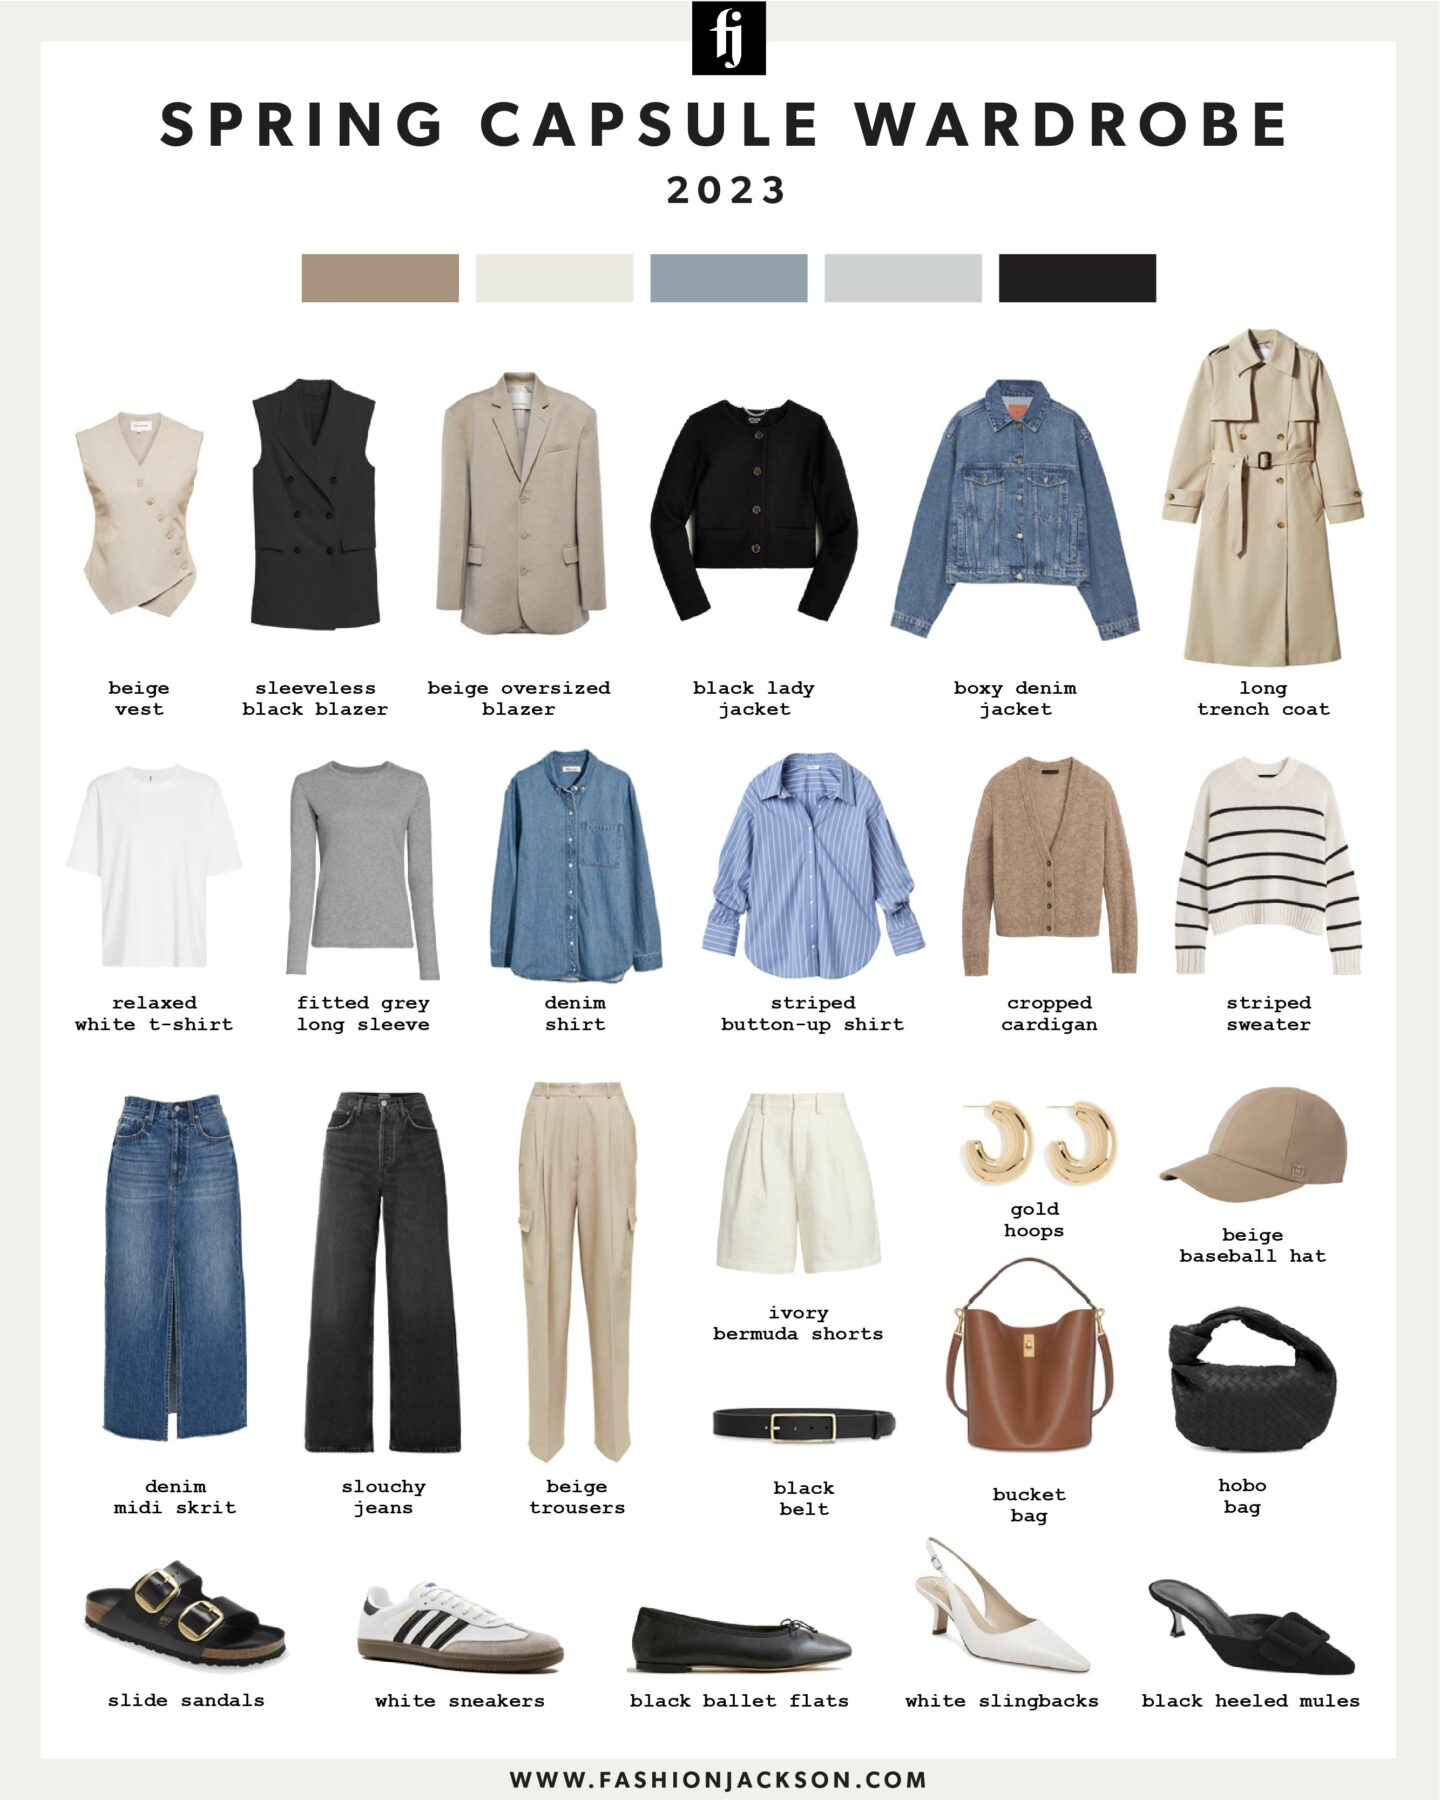 Spring Capsule Wardrobe: Key Staples to Wear this Season - Fashion Jackson